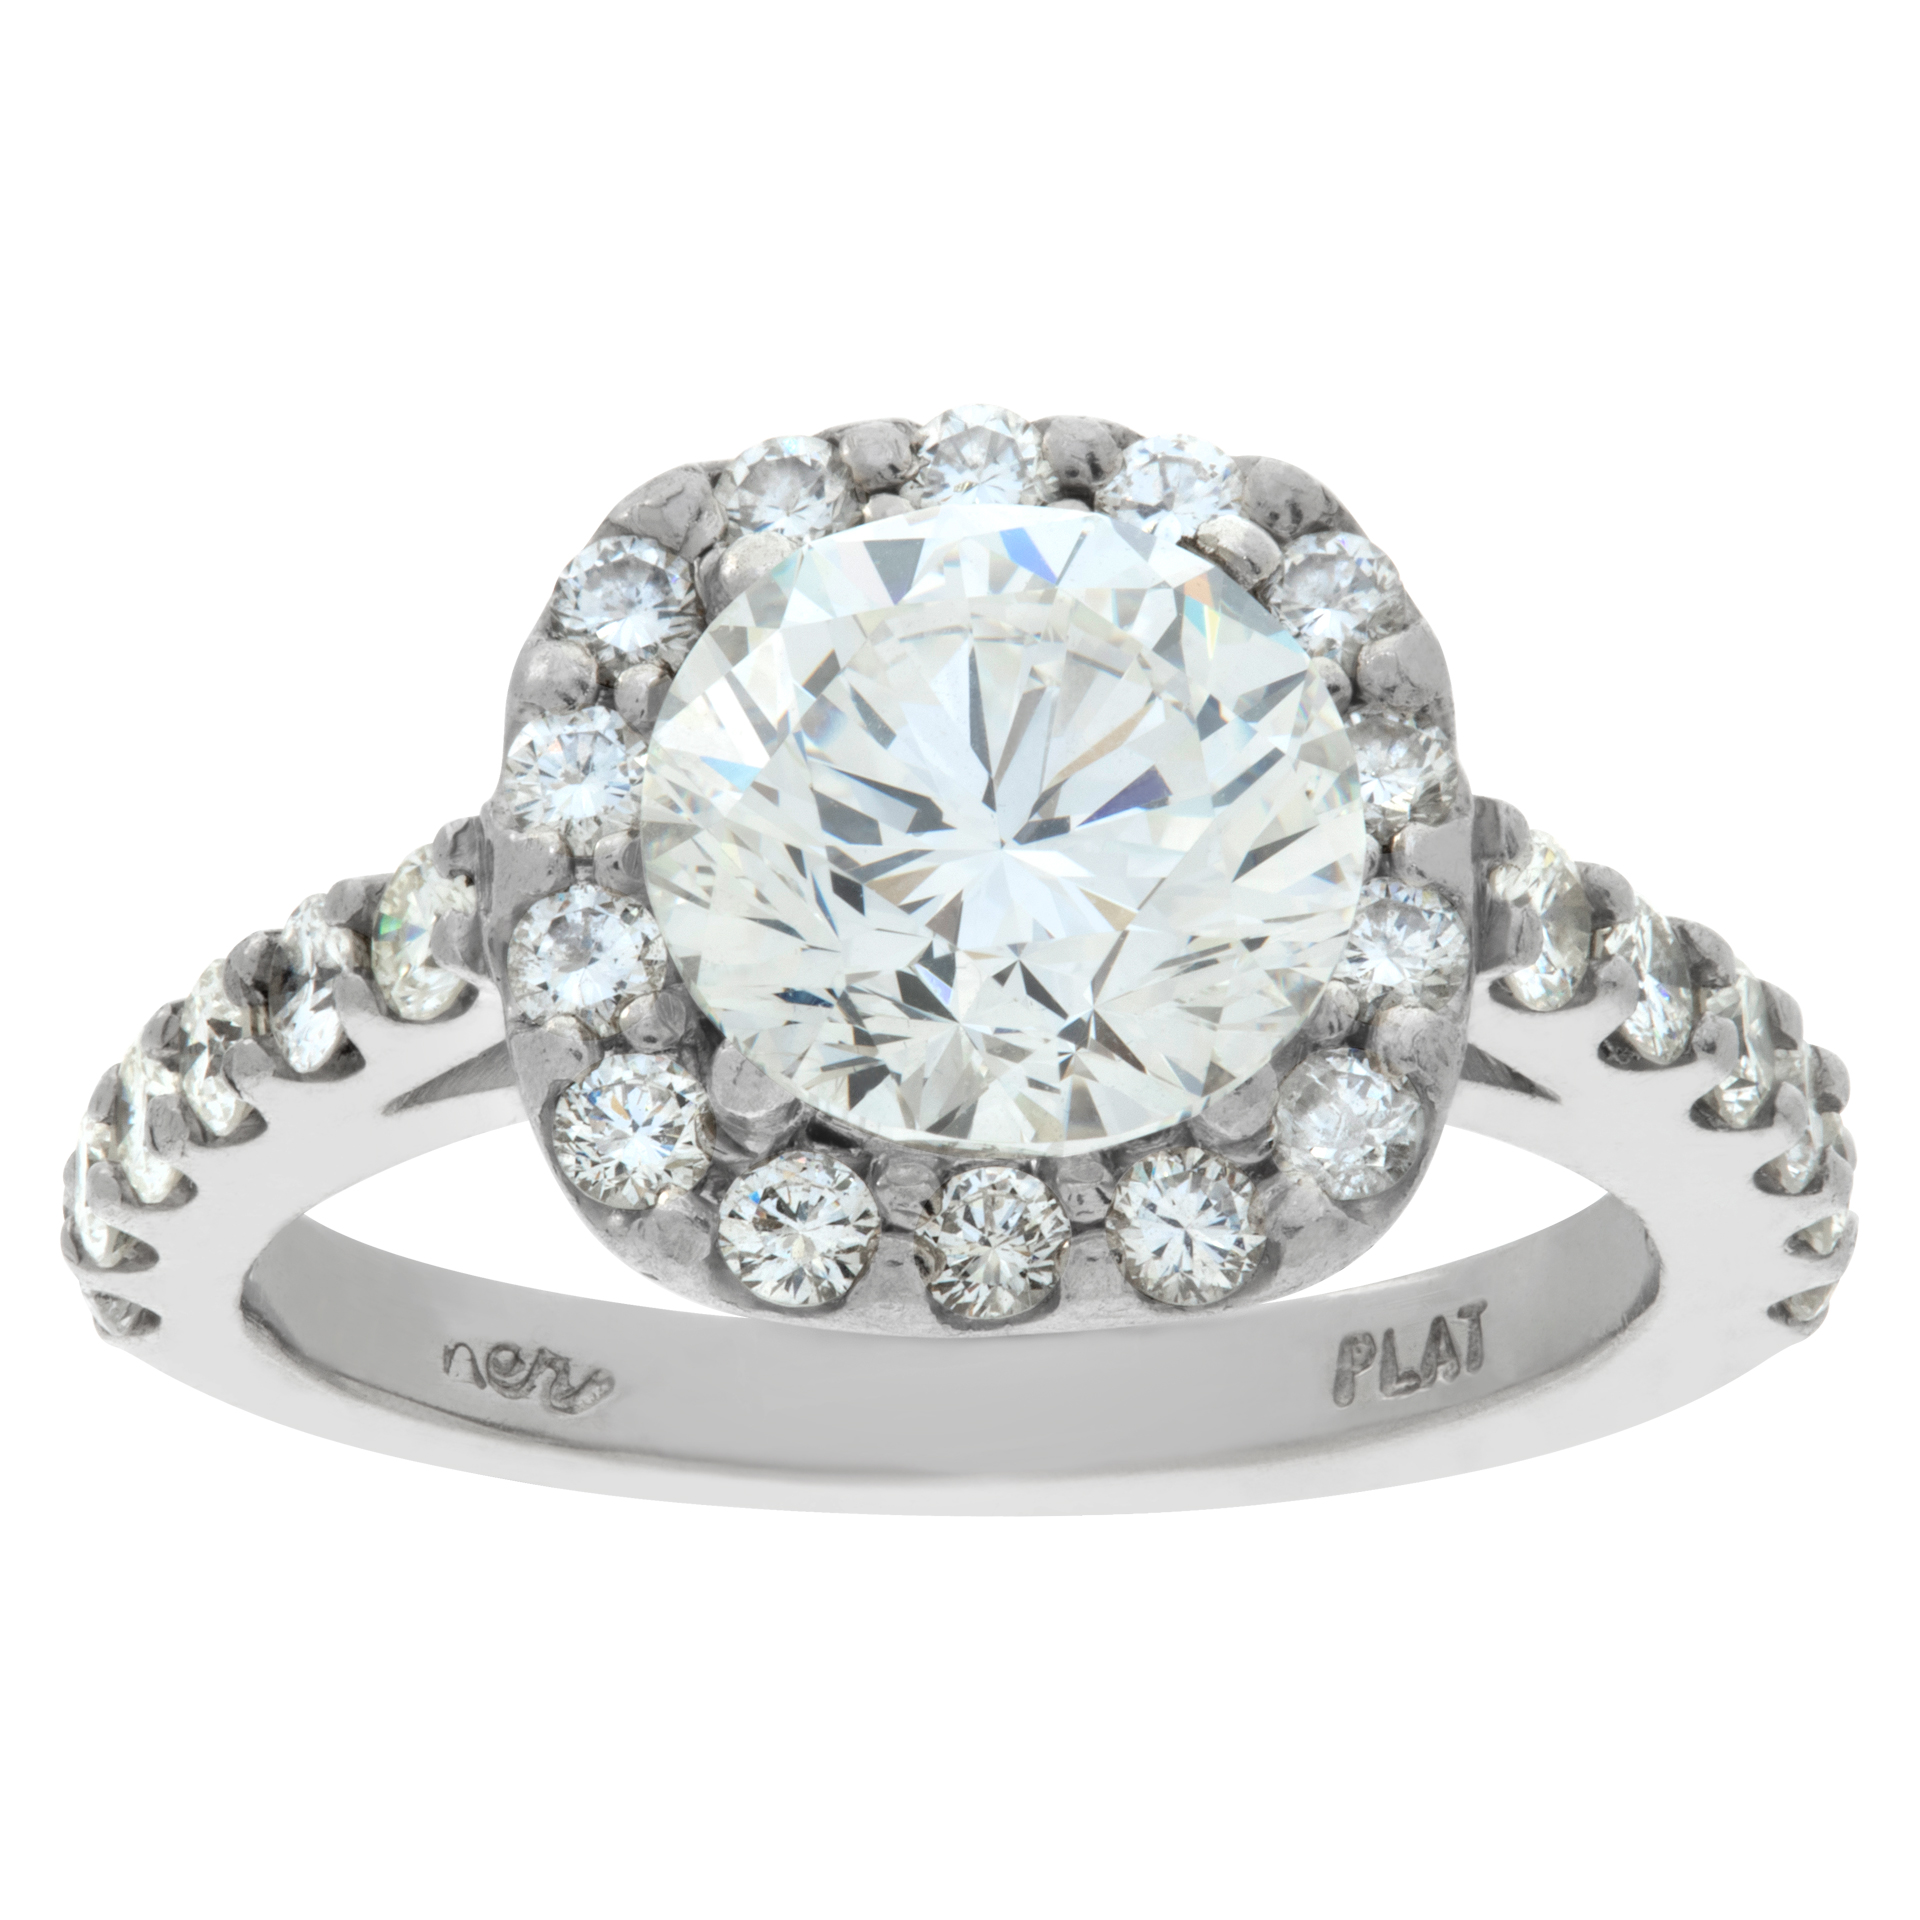 GIA certified round brilliant cut diamond 2.03 carat ( I color, SI1 clarity) ring set in platrinum (Stones)